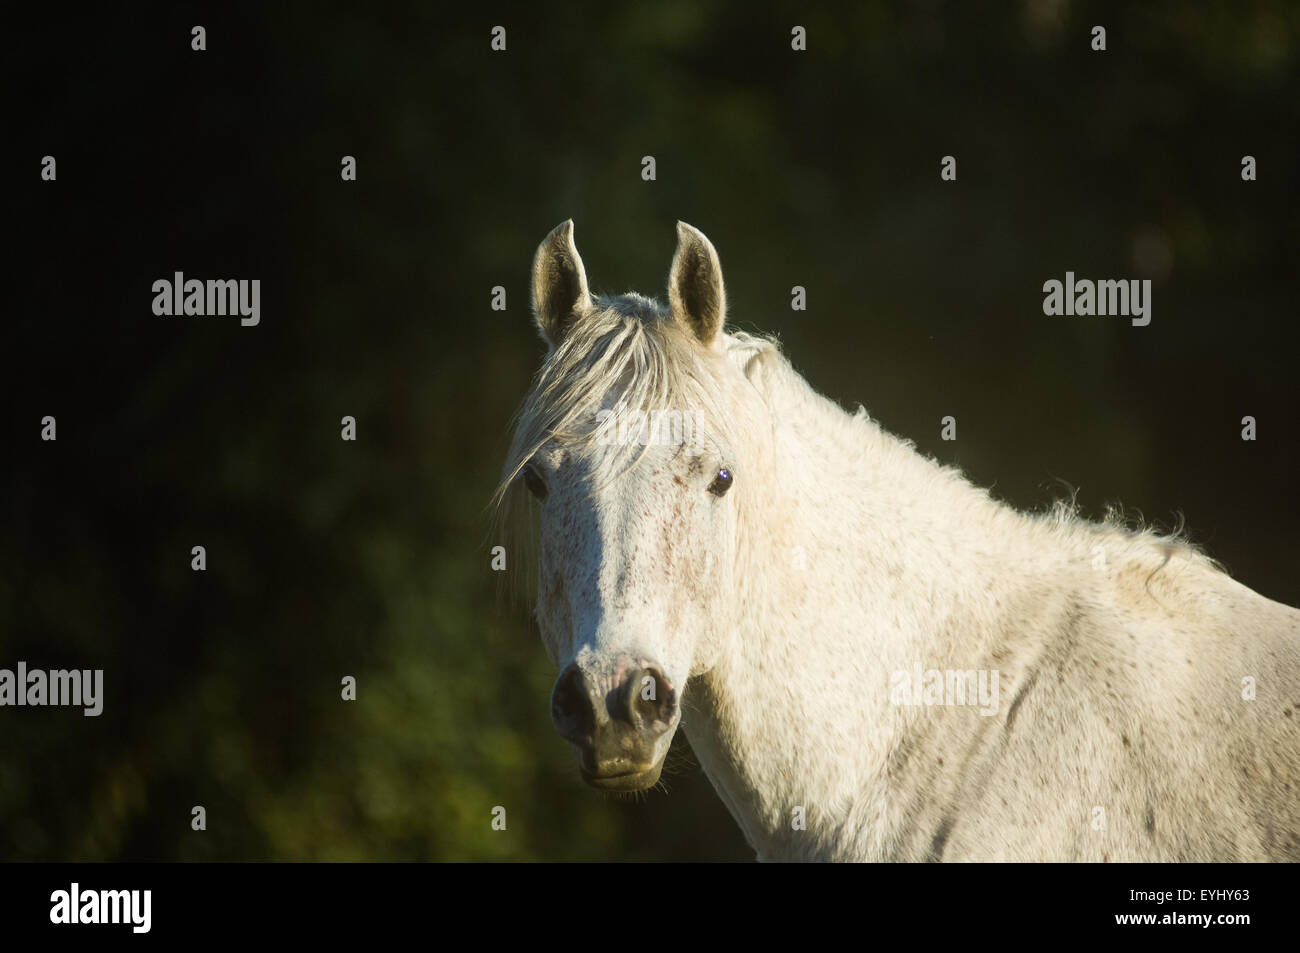 Parana, Brazil. White stallion horse. Stock Photo